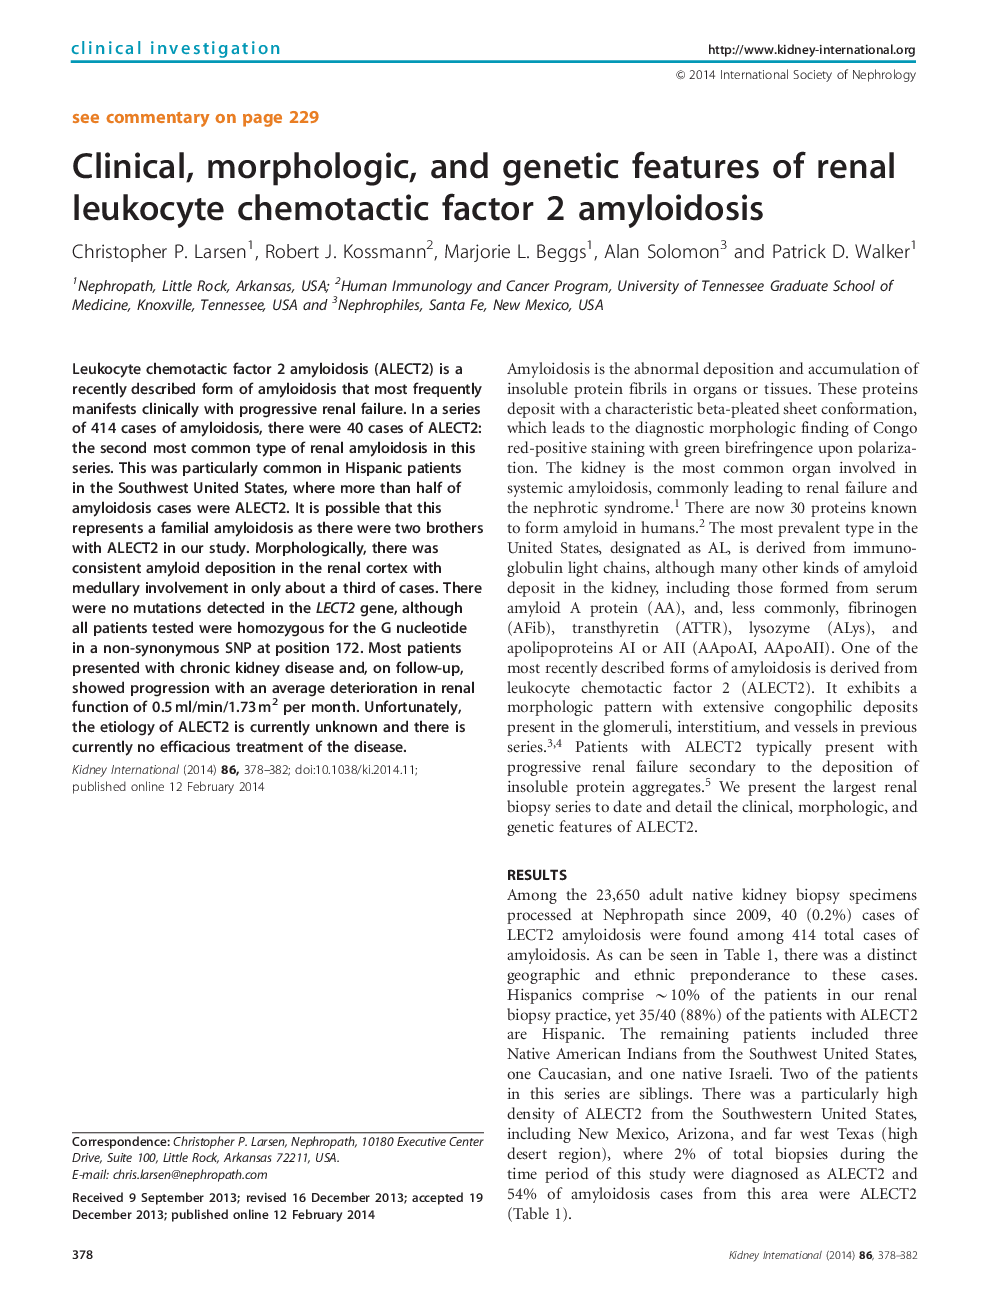 ویژگی های بالینی، مورفولوژیک و ژنتیکی فاکتور شیمیایی لکوسیتی کلیوی آمیلوئیدوز 